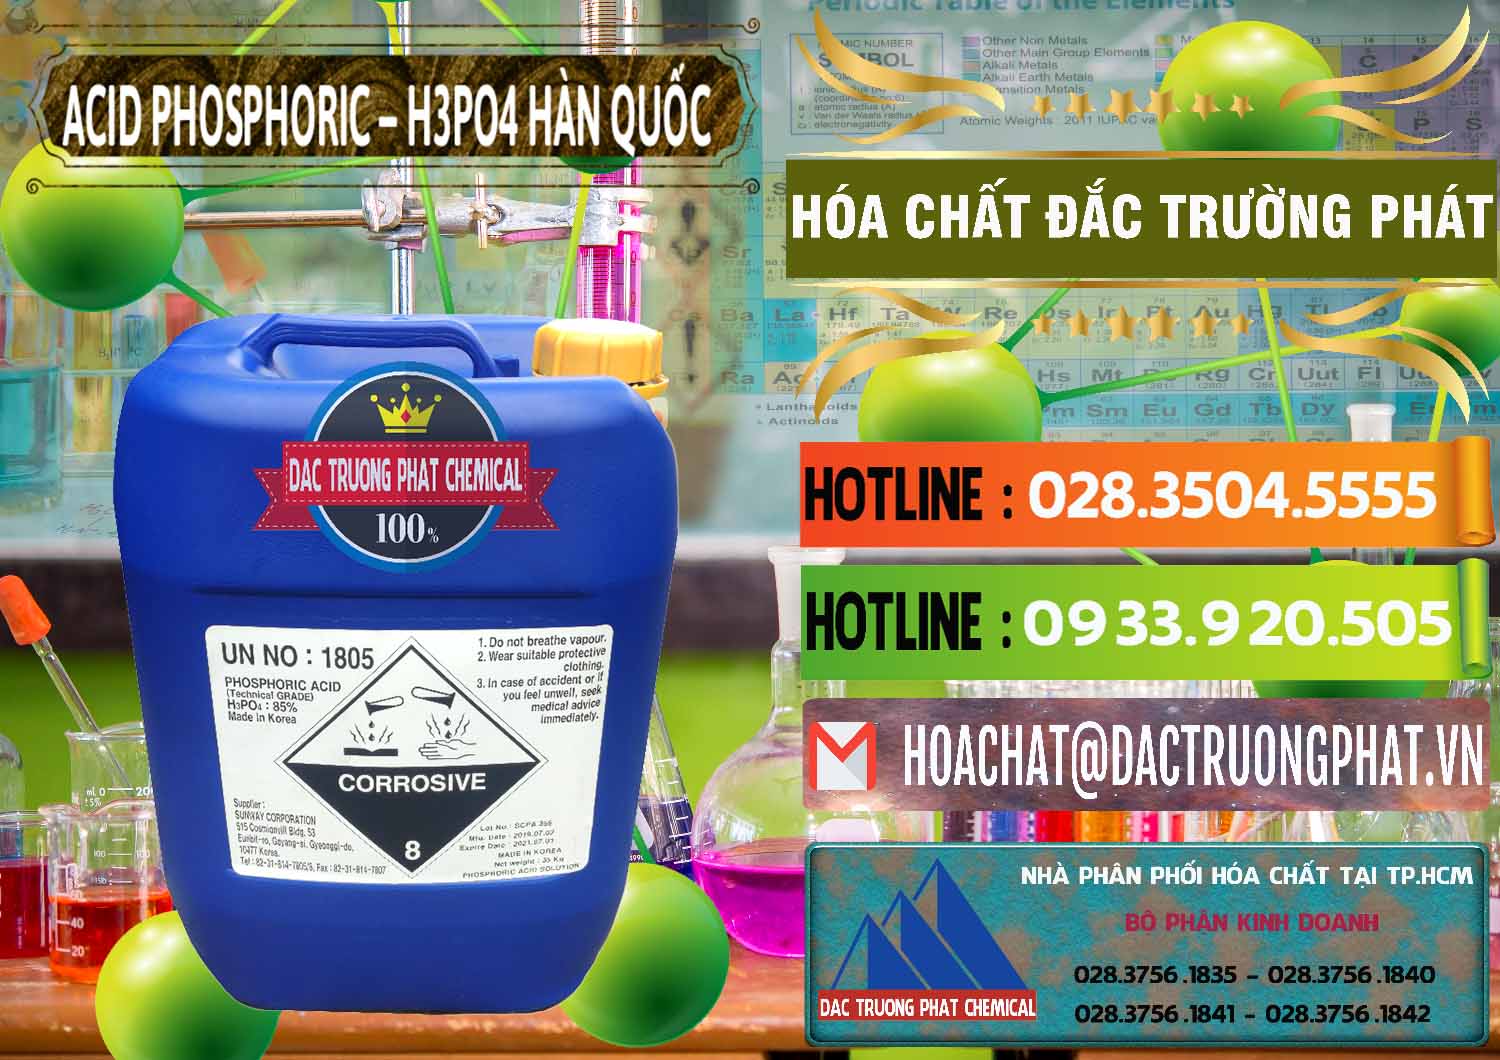 Công ty chuyên cung ứng và bán Acid Phosphoric – H3PO4 85% Can Xanh Hàn Quốc Korea - 0016 - Nhà nhập khẩu - cung cấp hóa chất tại TP.HCM - cungcaphoachat.com.vn